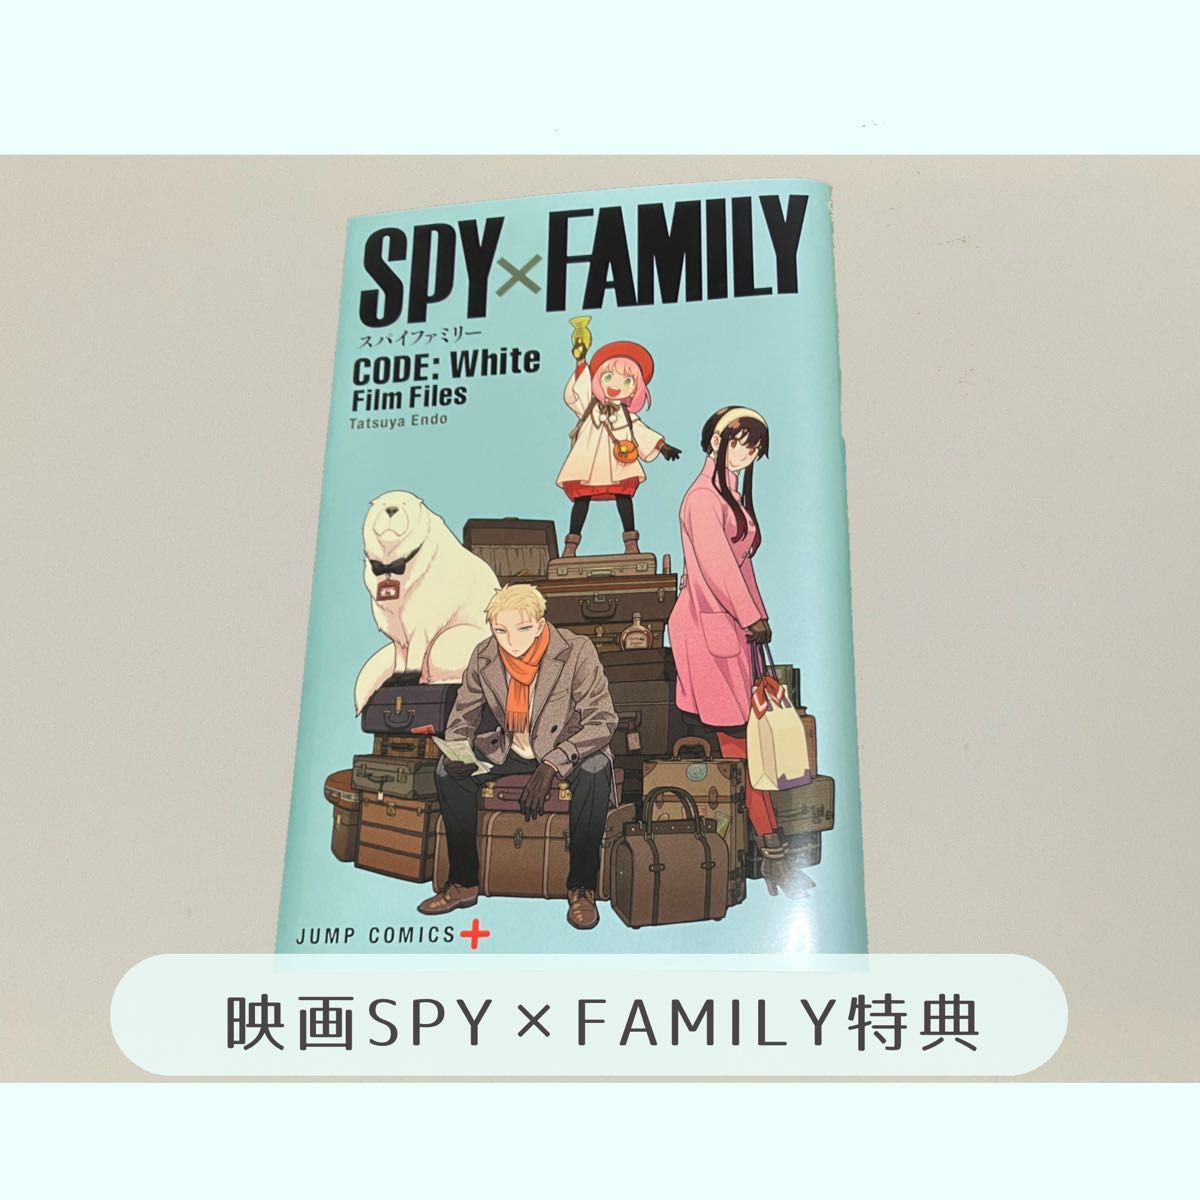 『SPY×FAMILY CODE: White』Film Files スペシャルコミック 入場者特典